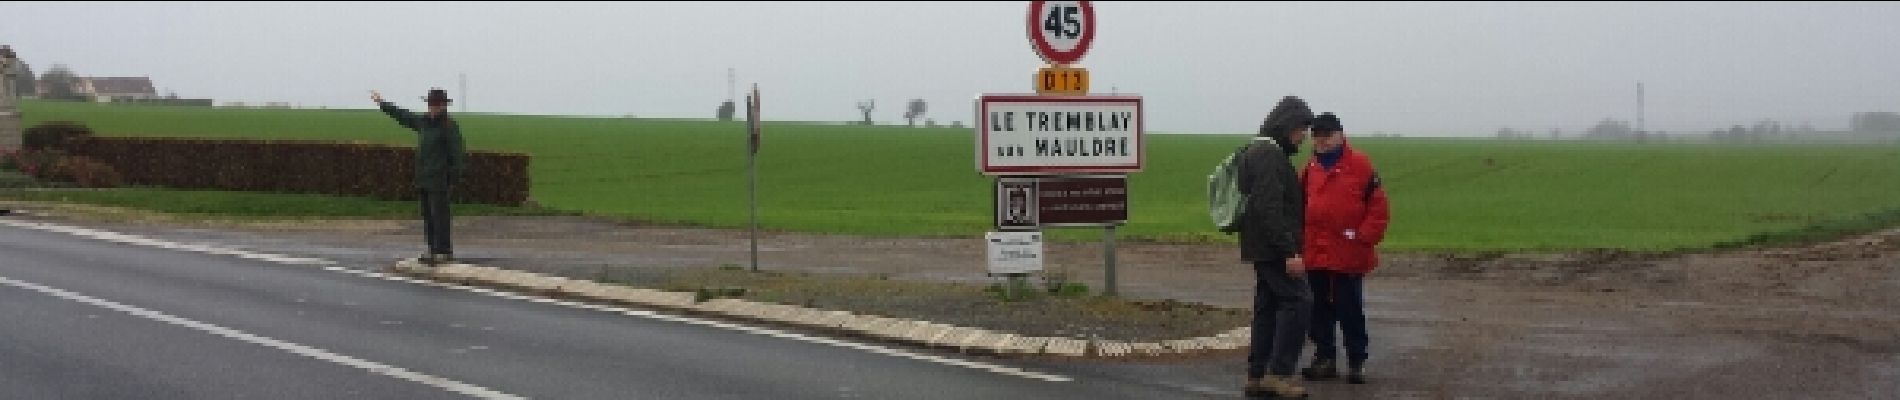 Point d'intérêt Le Tremblay-sur-Mauldre - Traversée sous haute protection - Photo